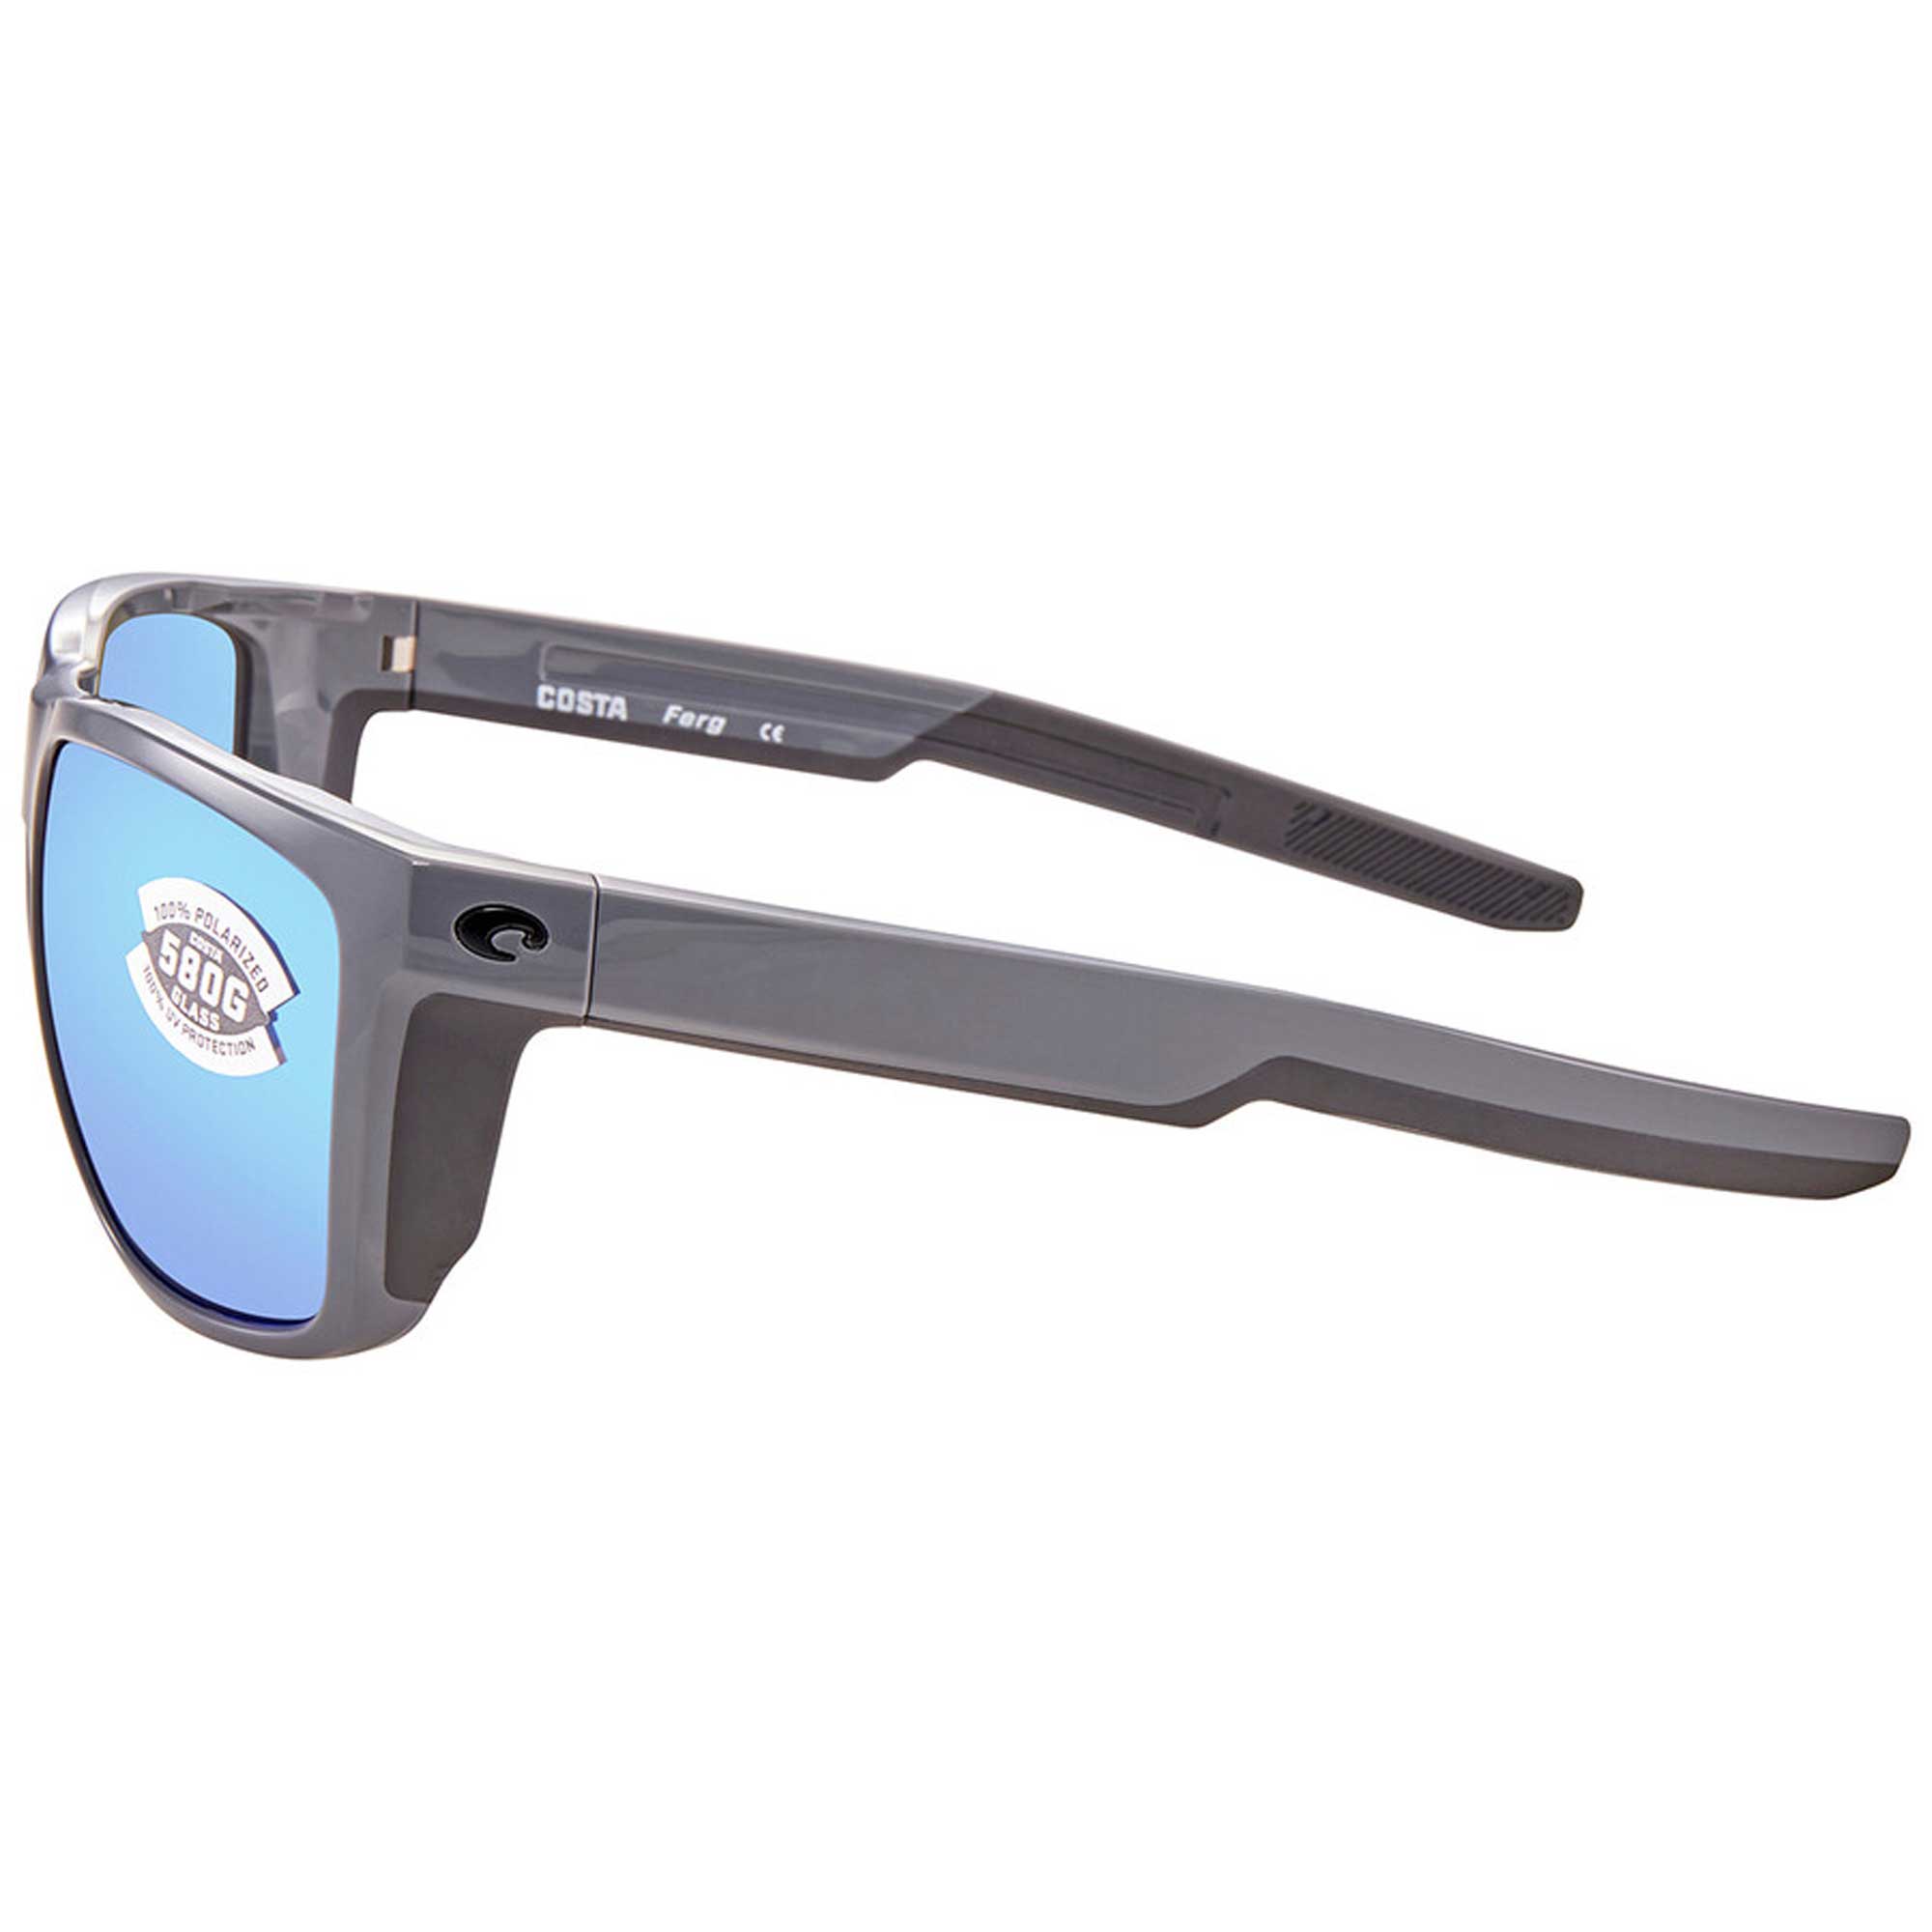 Sunglasses Costa Del Mar 06 S 9002 900233 Ferg 298 Shiny Gray Blue Mirr - image 3 of 3